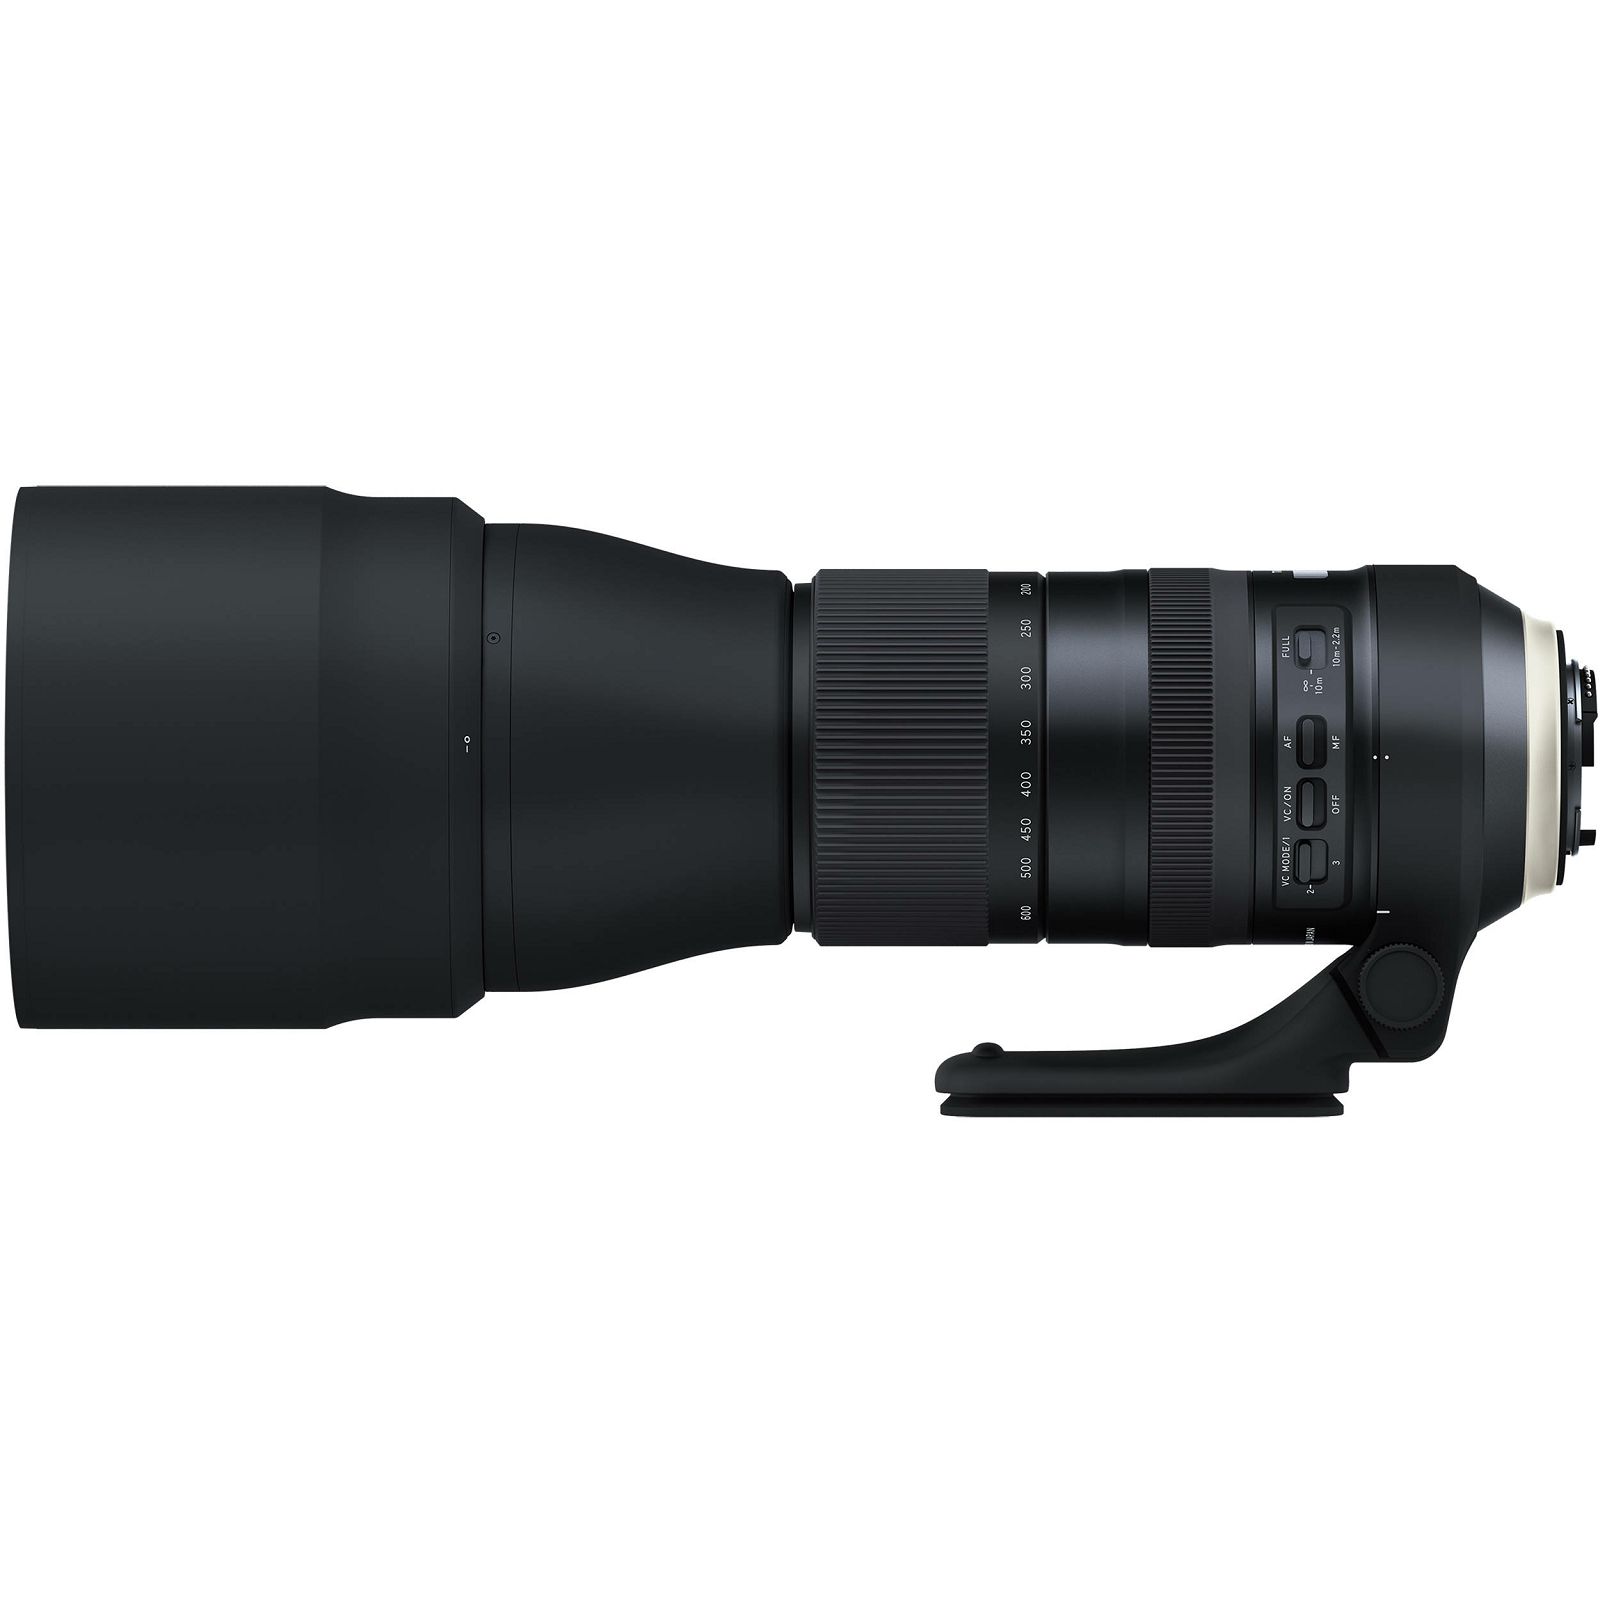 Tamron SP AF 150-600mm f/5-6.3 Di VC USD G2 telefoto objektiv za Nikon FX (A022N)